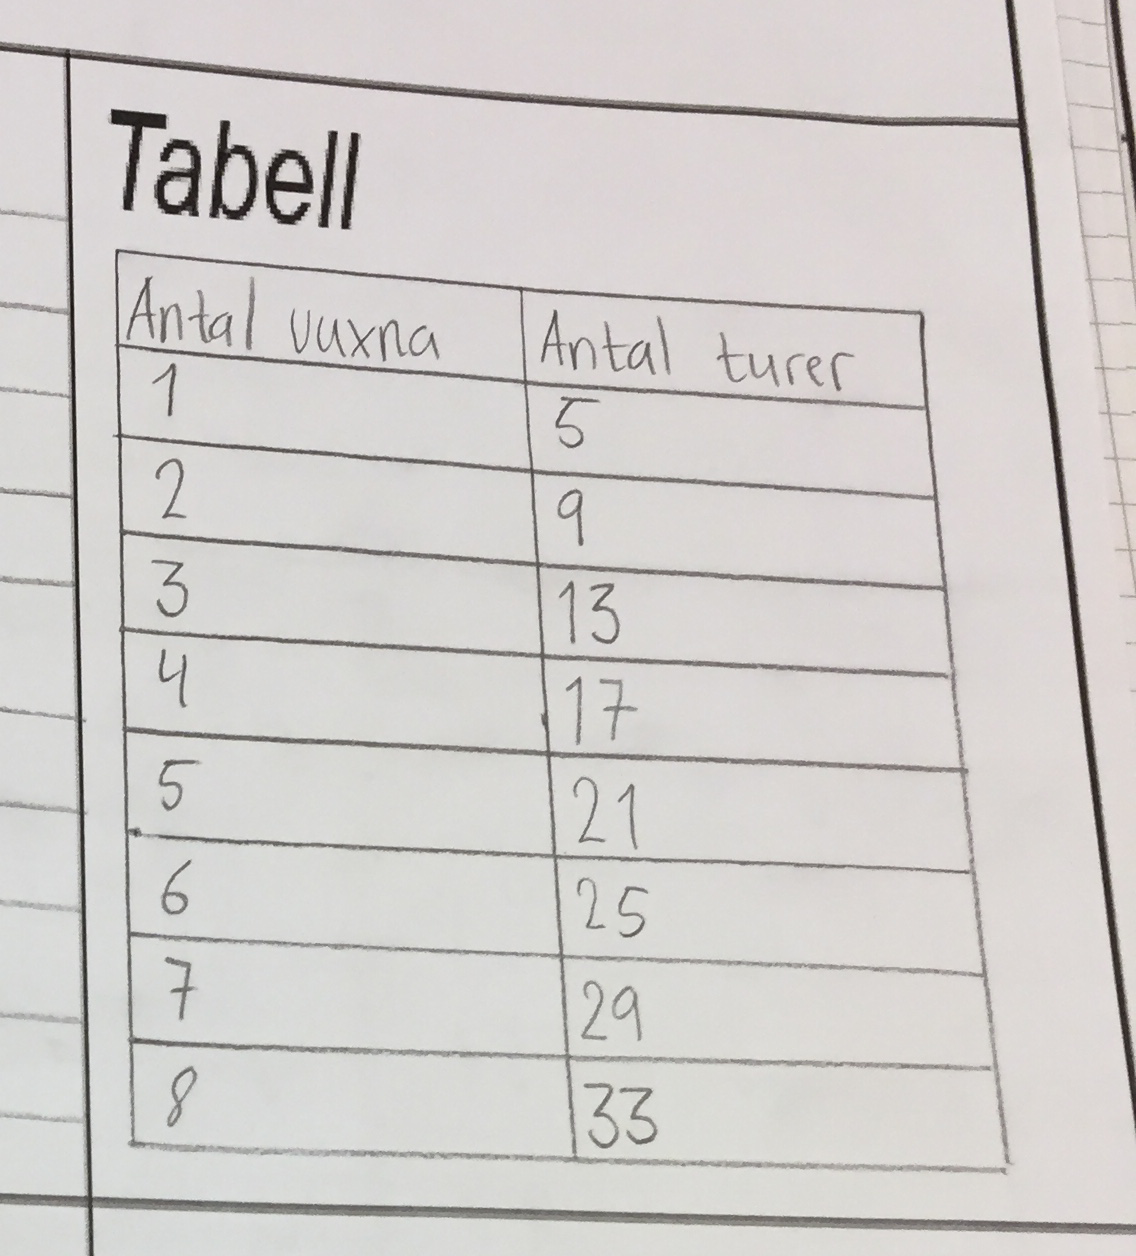 En ifylld tabell som exemplifierar hur man kan notera problemet och anteckna antalet vuxna och antalet turer